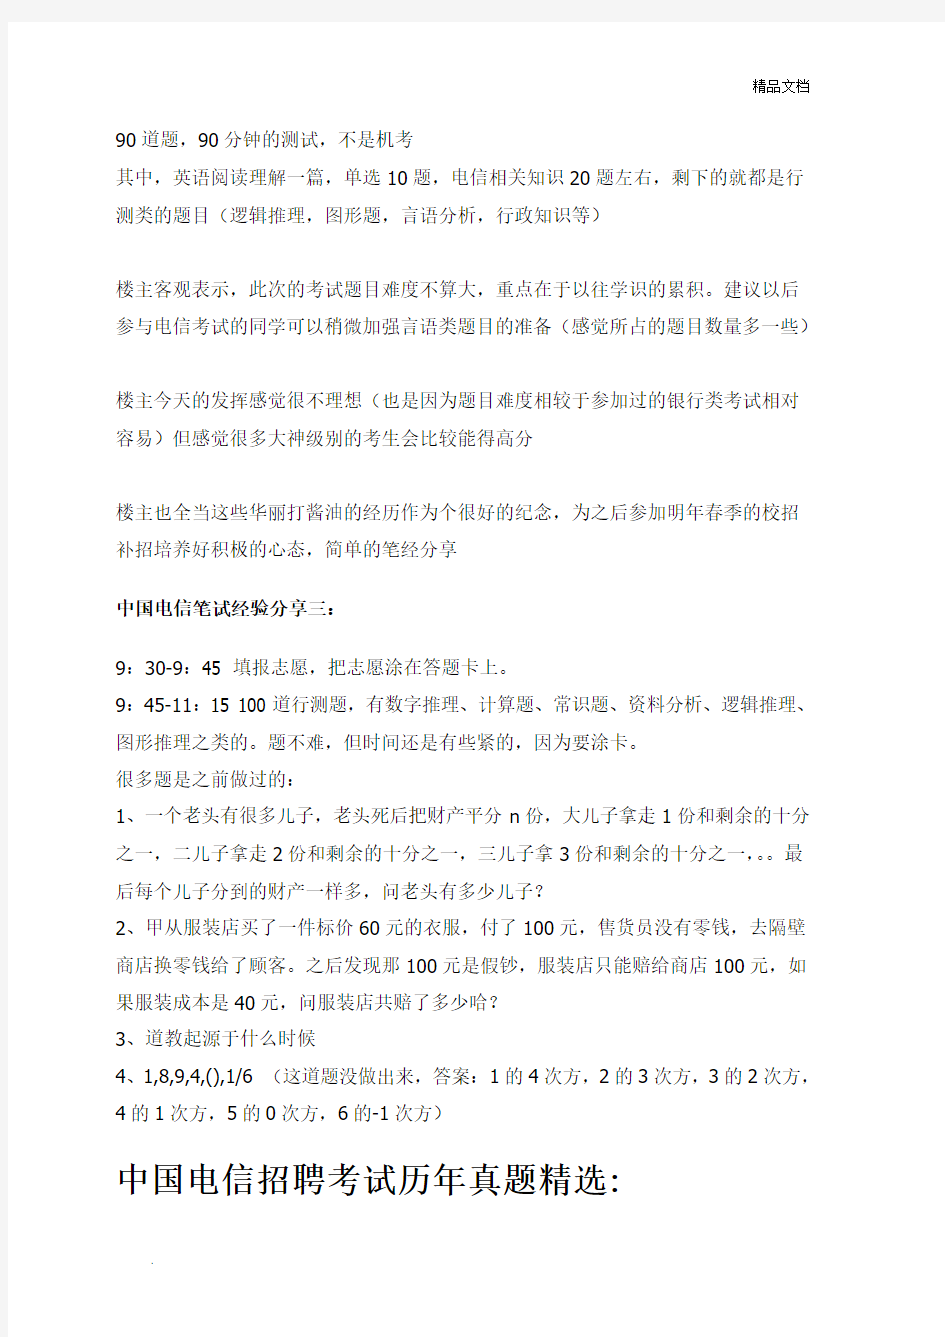 中国电信2018招聘考试笔试专用题库讲义历年考试真题